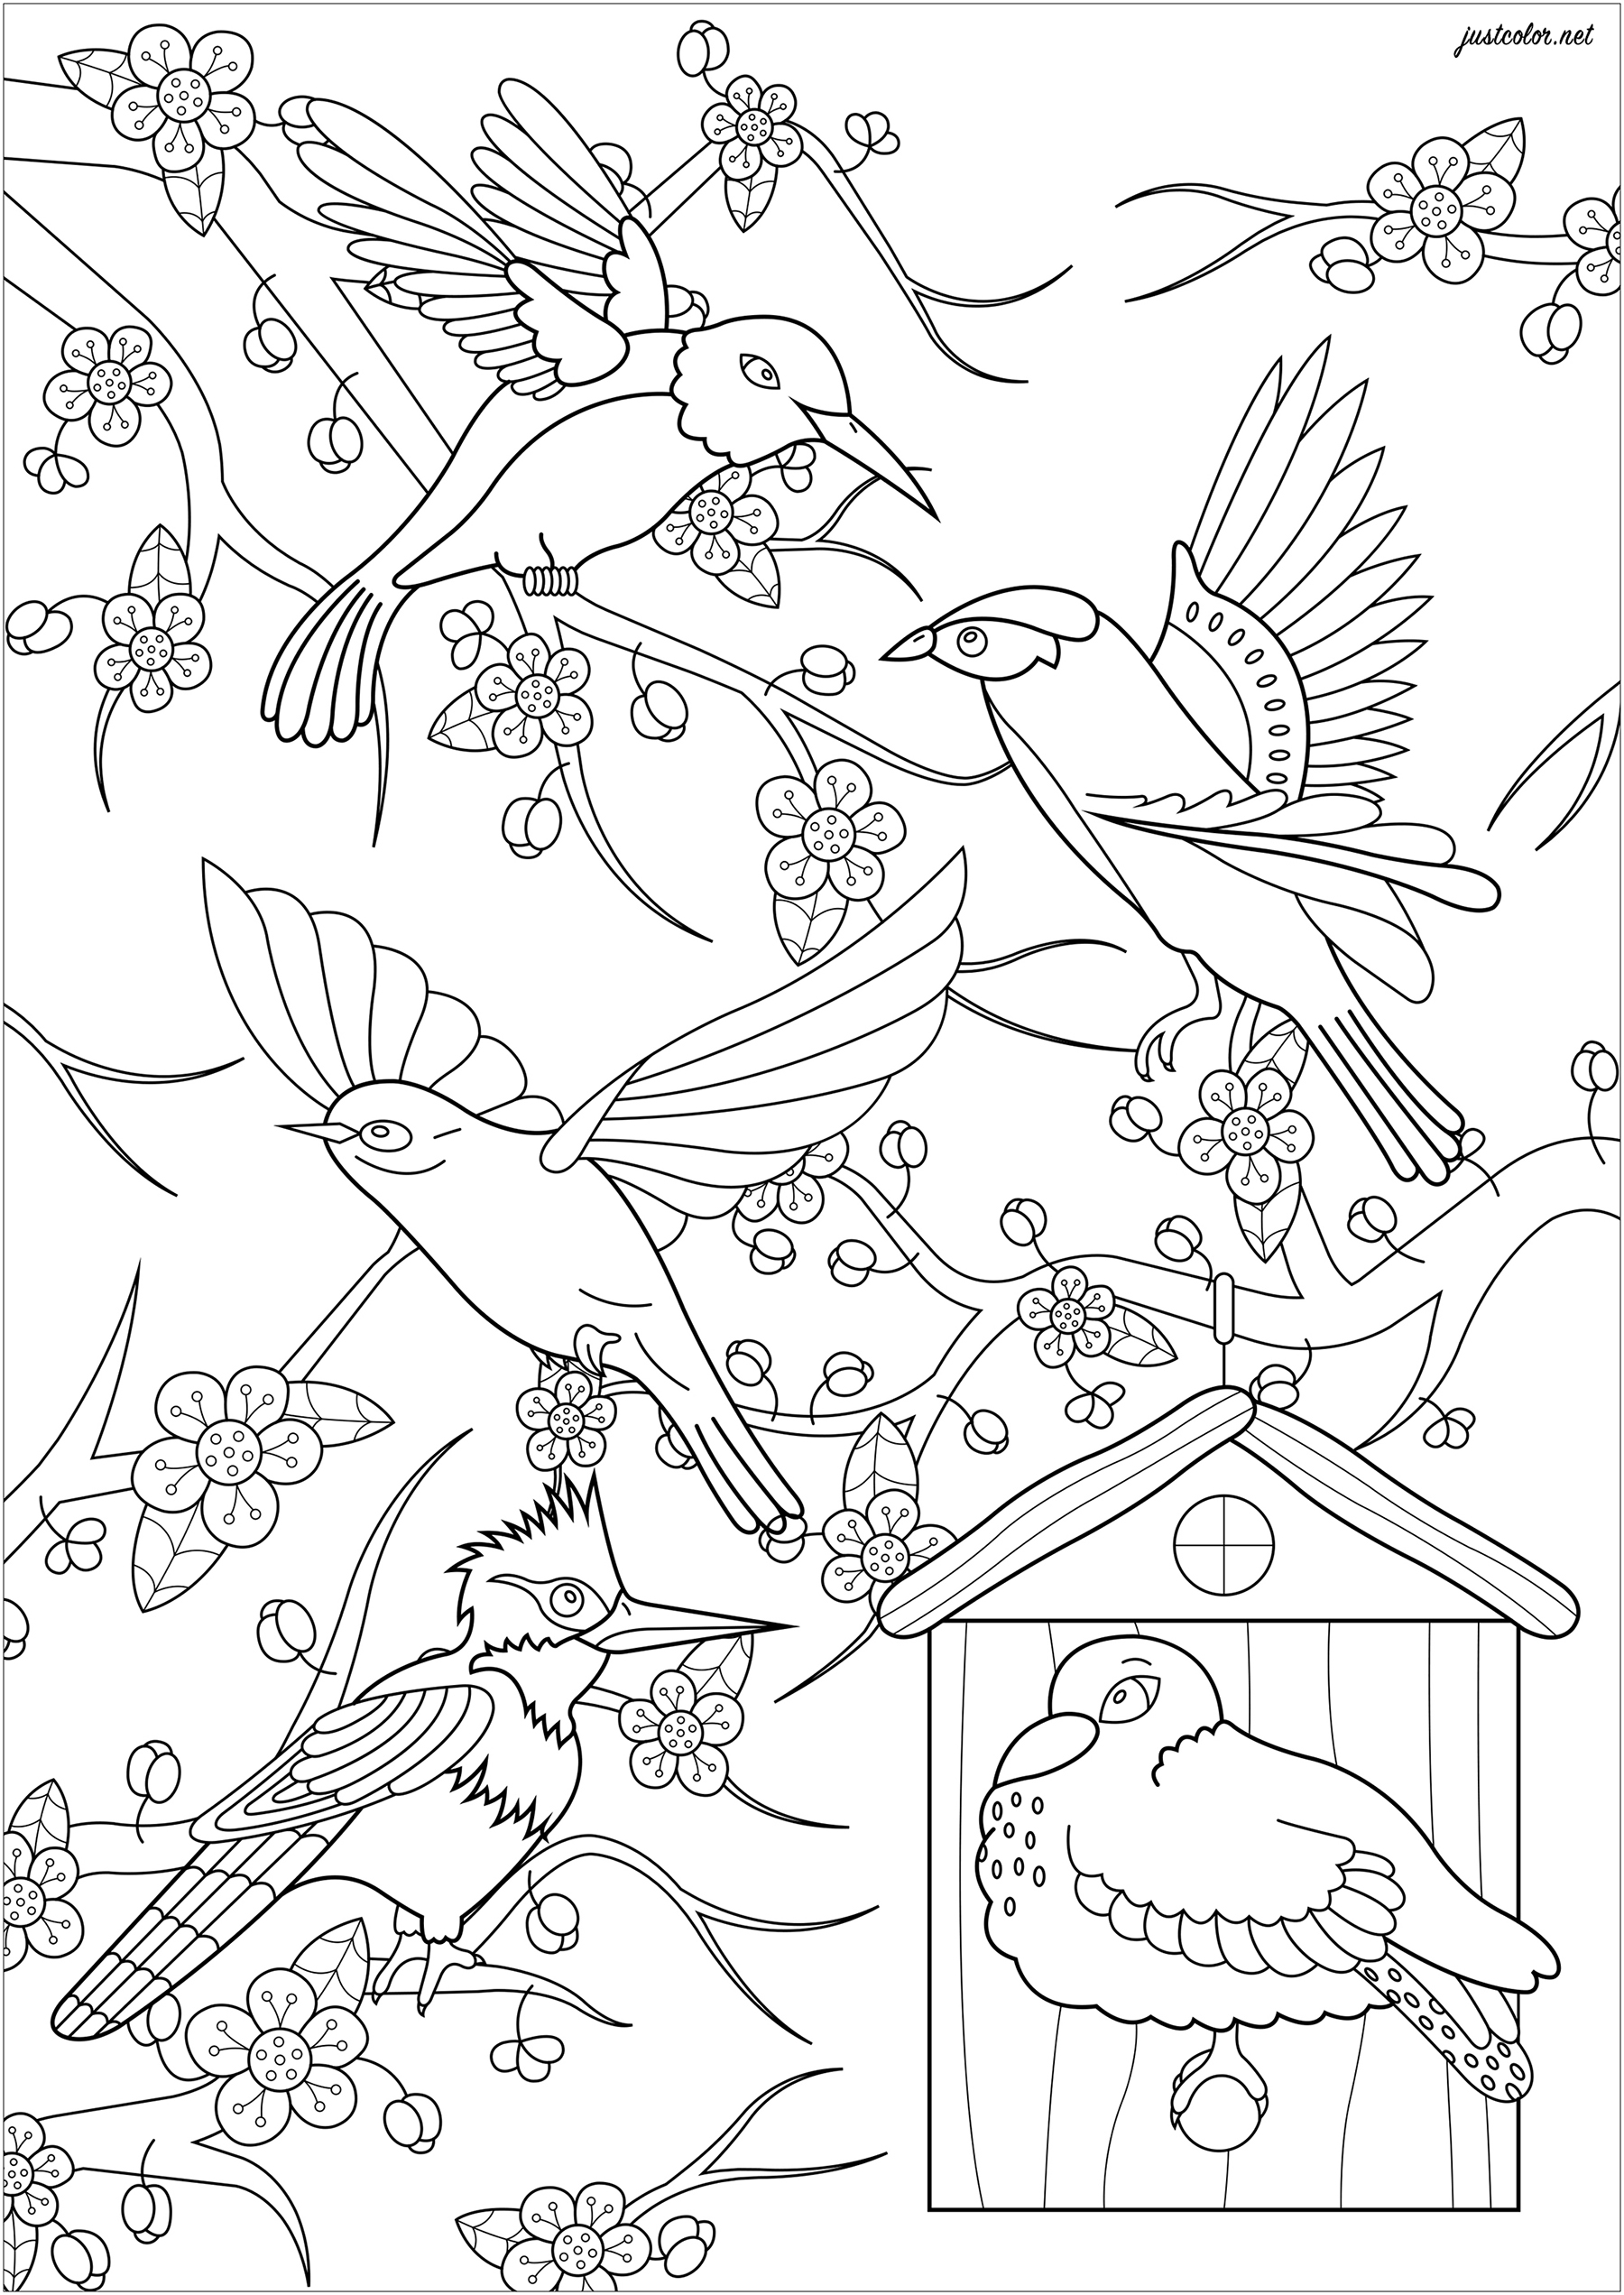 Pinte estes cinco pássaros que voam em frente a uma cerejeira japonesa